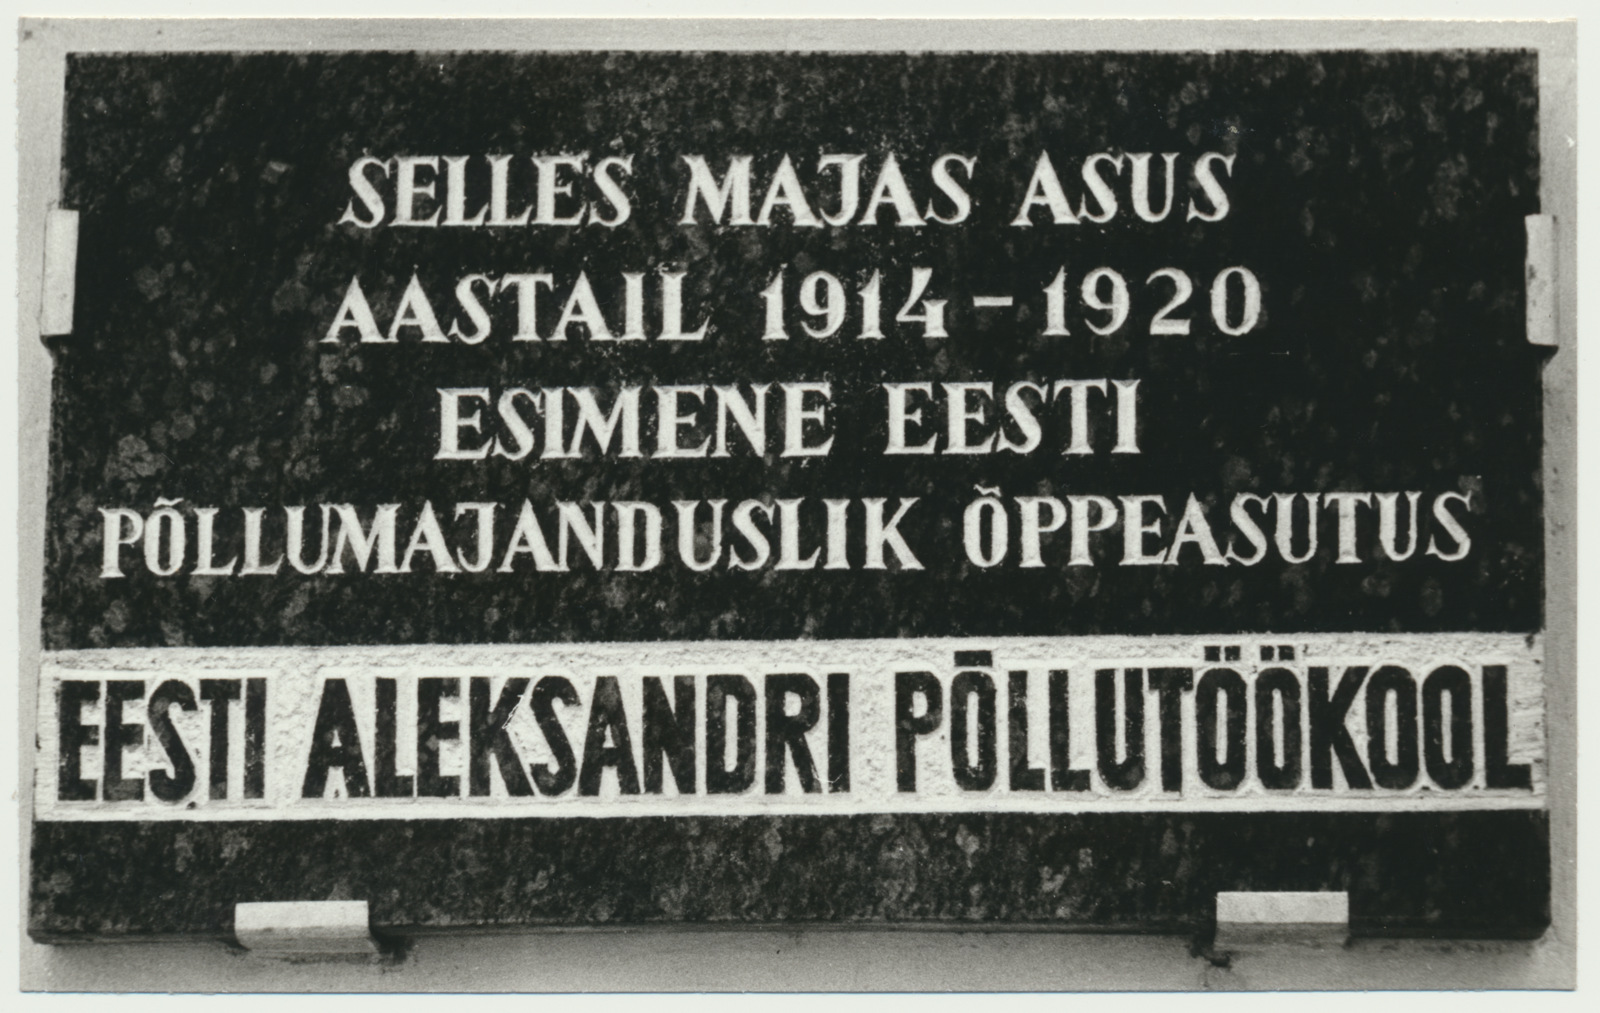 foto, Viljandimaa, Kõo, Eesti Aleksandri Põllutöökooli mälestustahvel, u 1975, foto E. Veliste